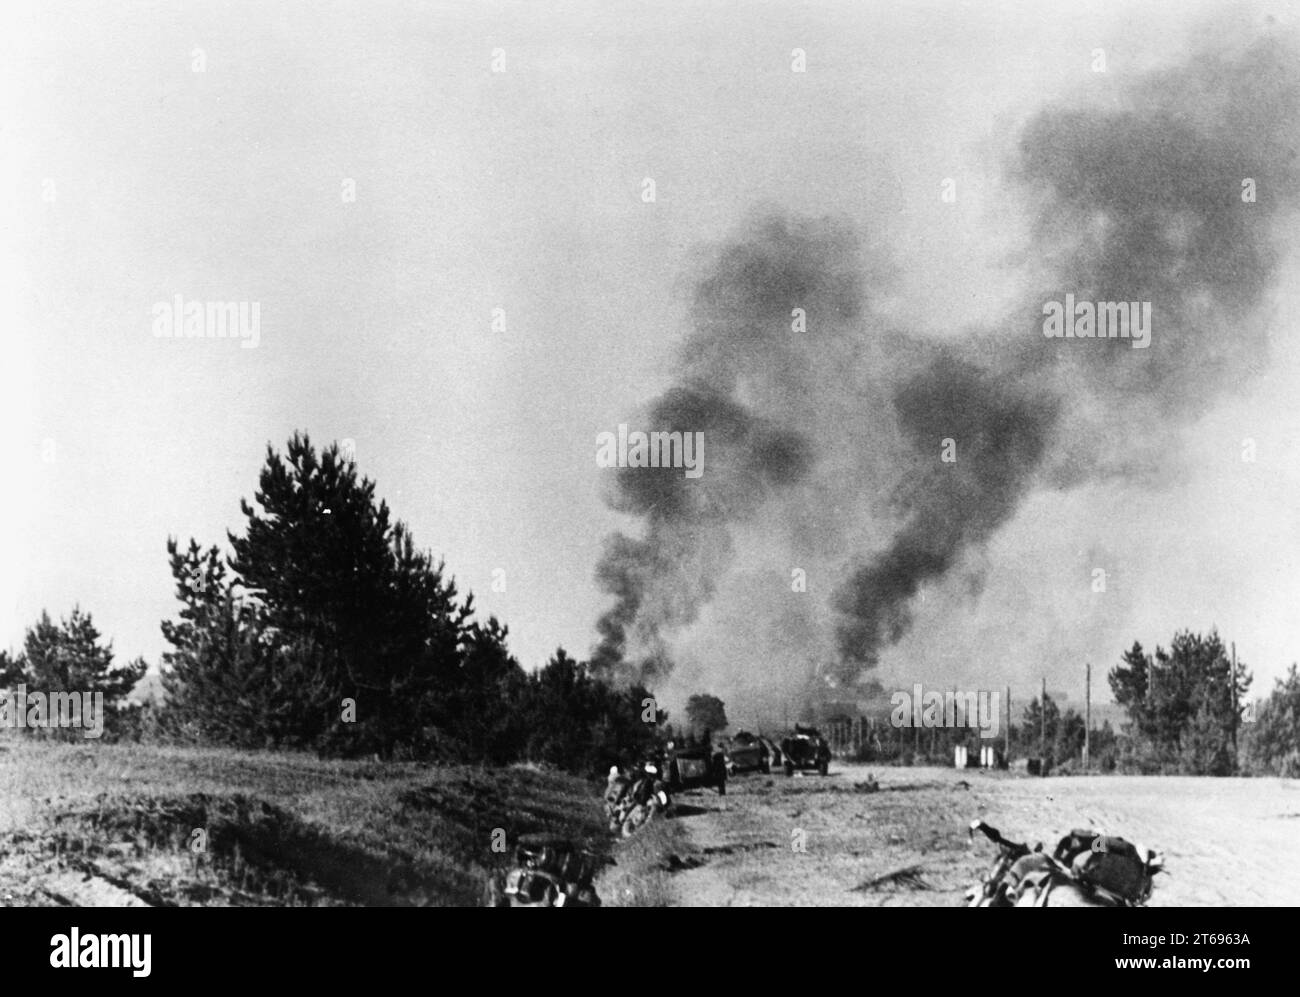 Troupes allemandes devant Pleskau (Pskov), en fond de nuages de fumée après une attaque Stuka sur un dépôt de munitions russe. Photo : Tannenberg [traduction automatique] Banque D'Images